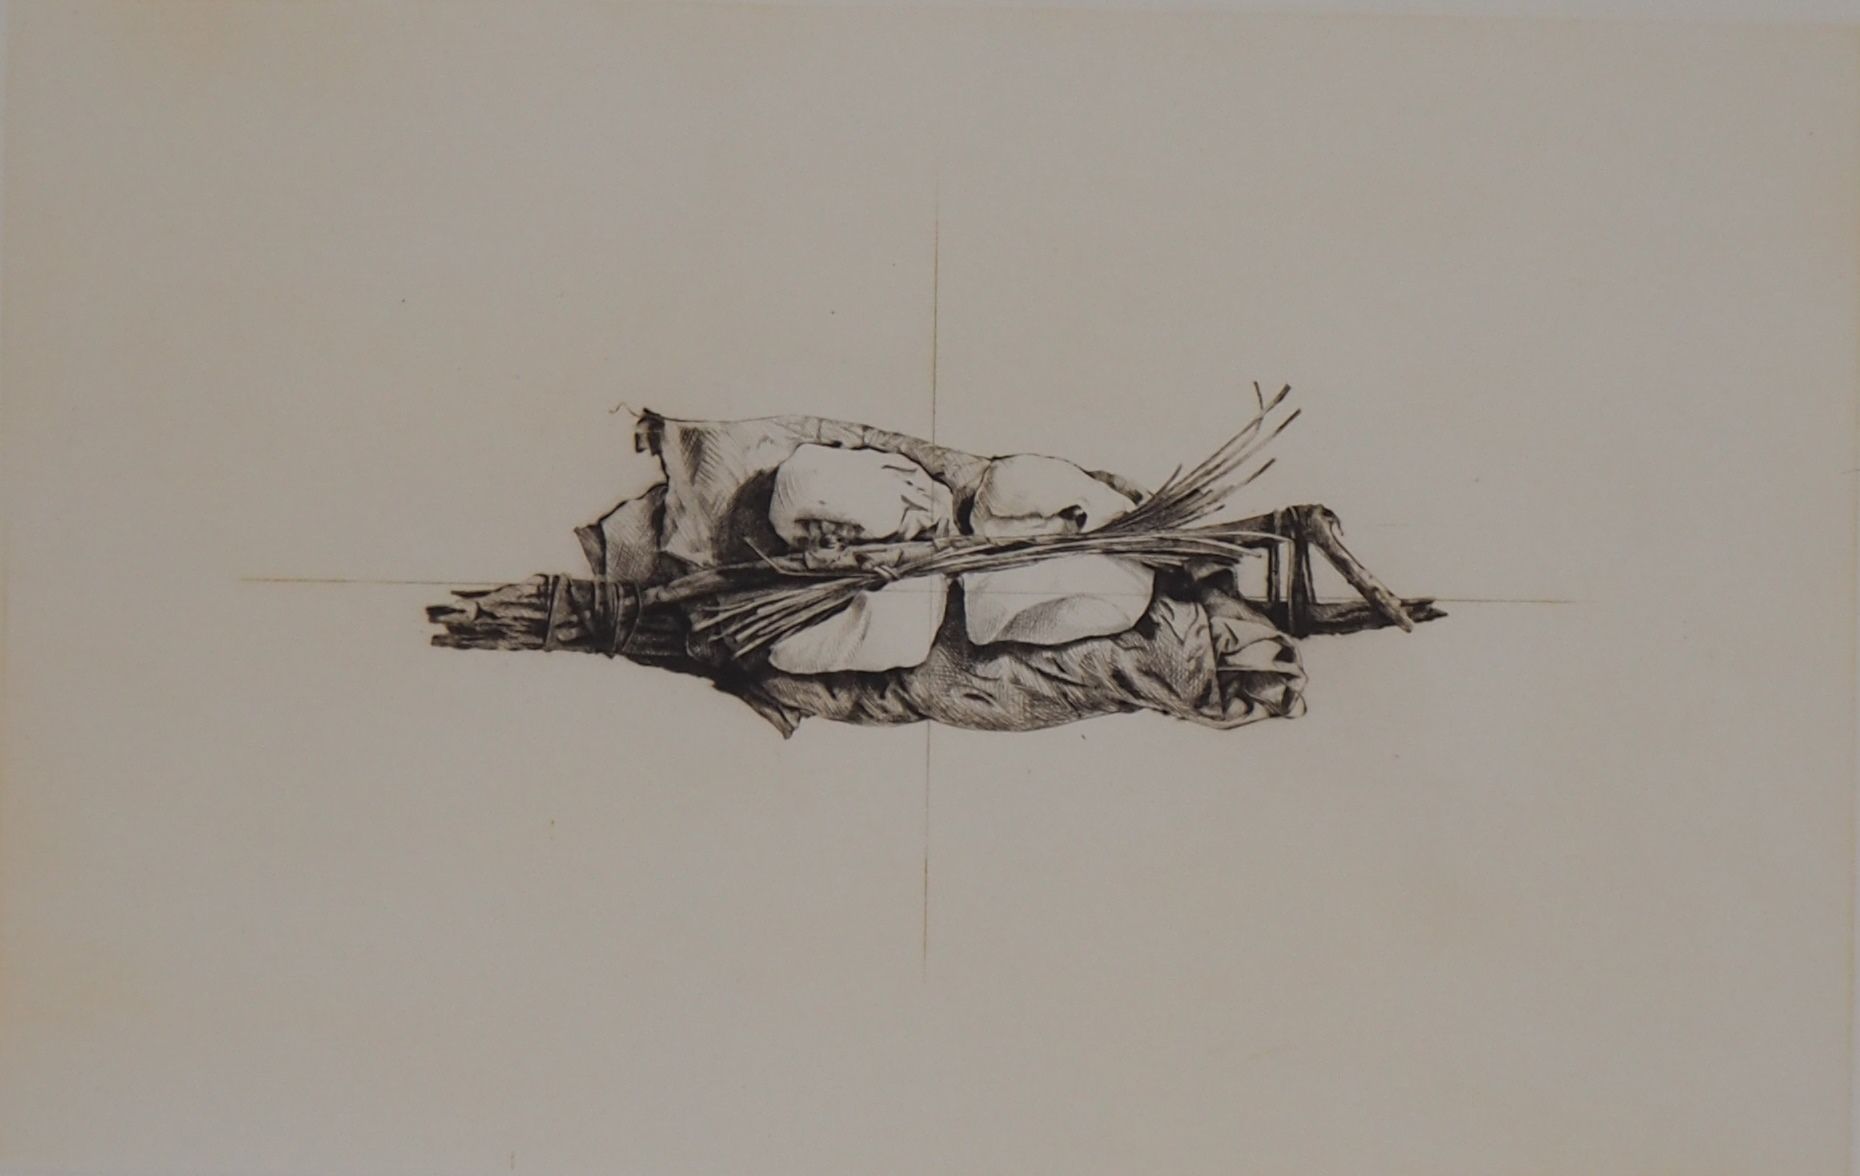 Gérard TITUS-CARMEL 提图斯-卡梅尔

植物构成, 1973



原始蚀刻画

铅笔签名的艺术家

编号为100的

在拱形牛皮纸上，46 &hellip;